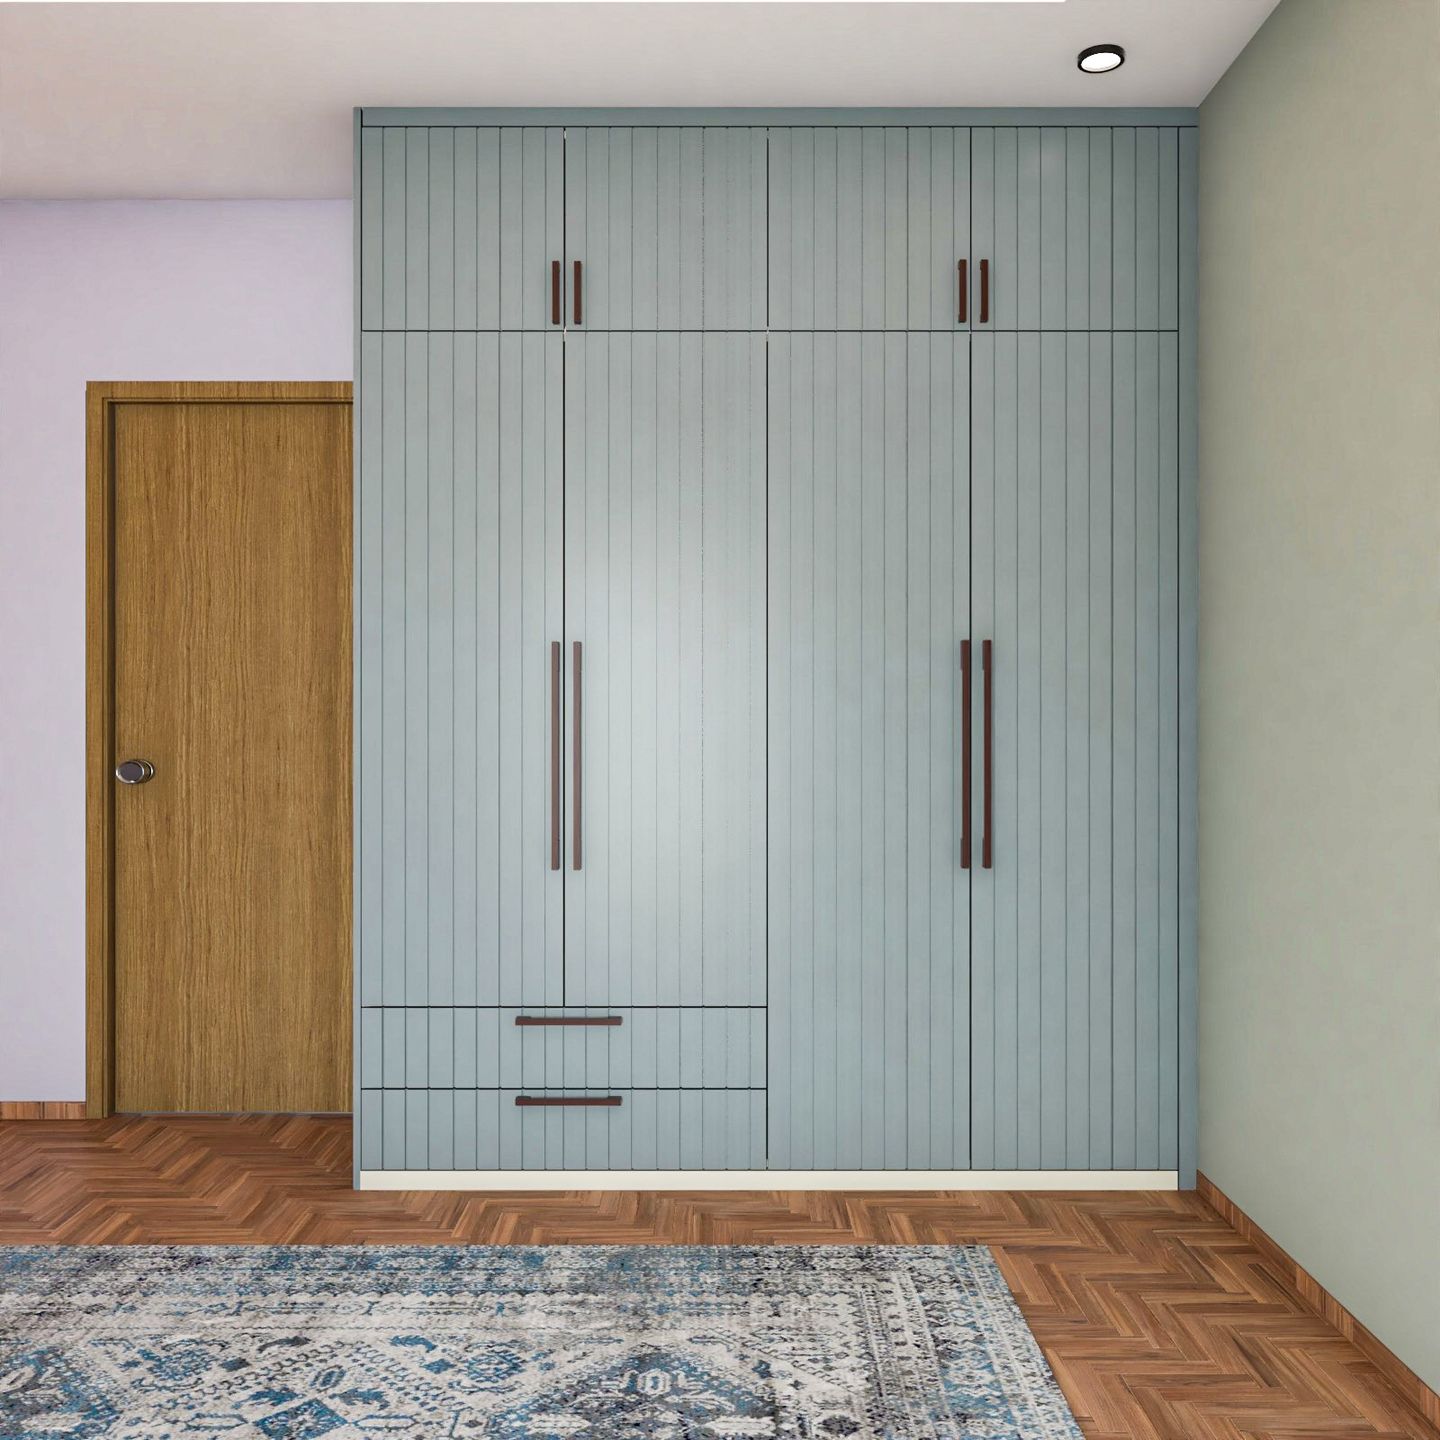 4-Door Swing Wardrobe Design In Teal Blue - Livspace